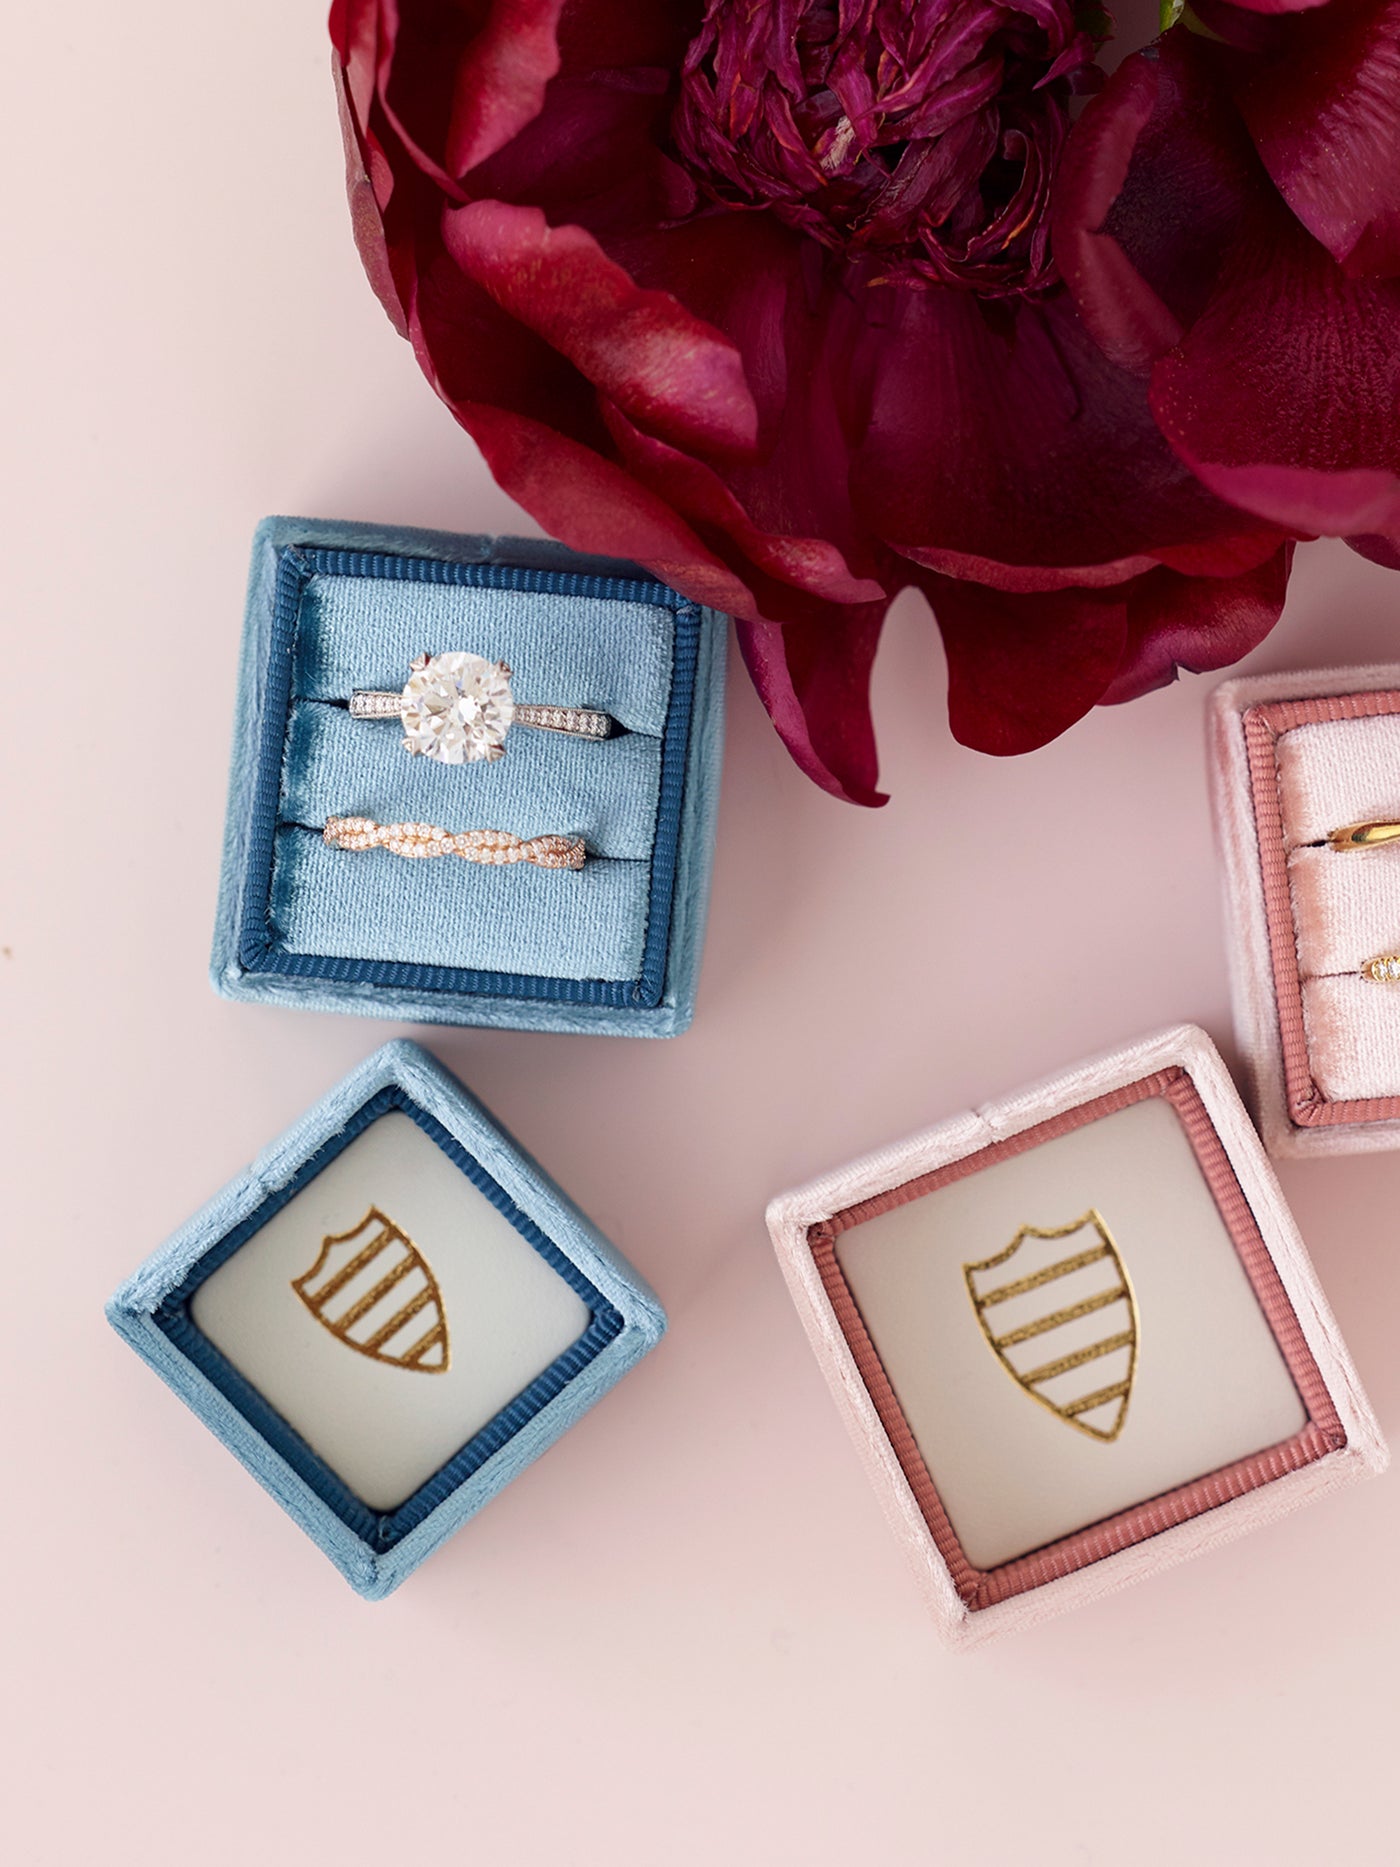 jade velvet wedding ring box engagement gift idea